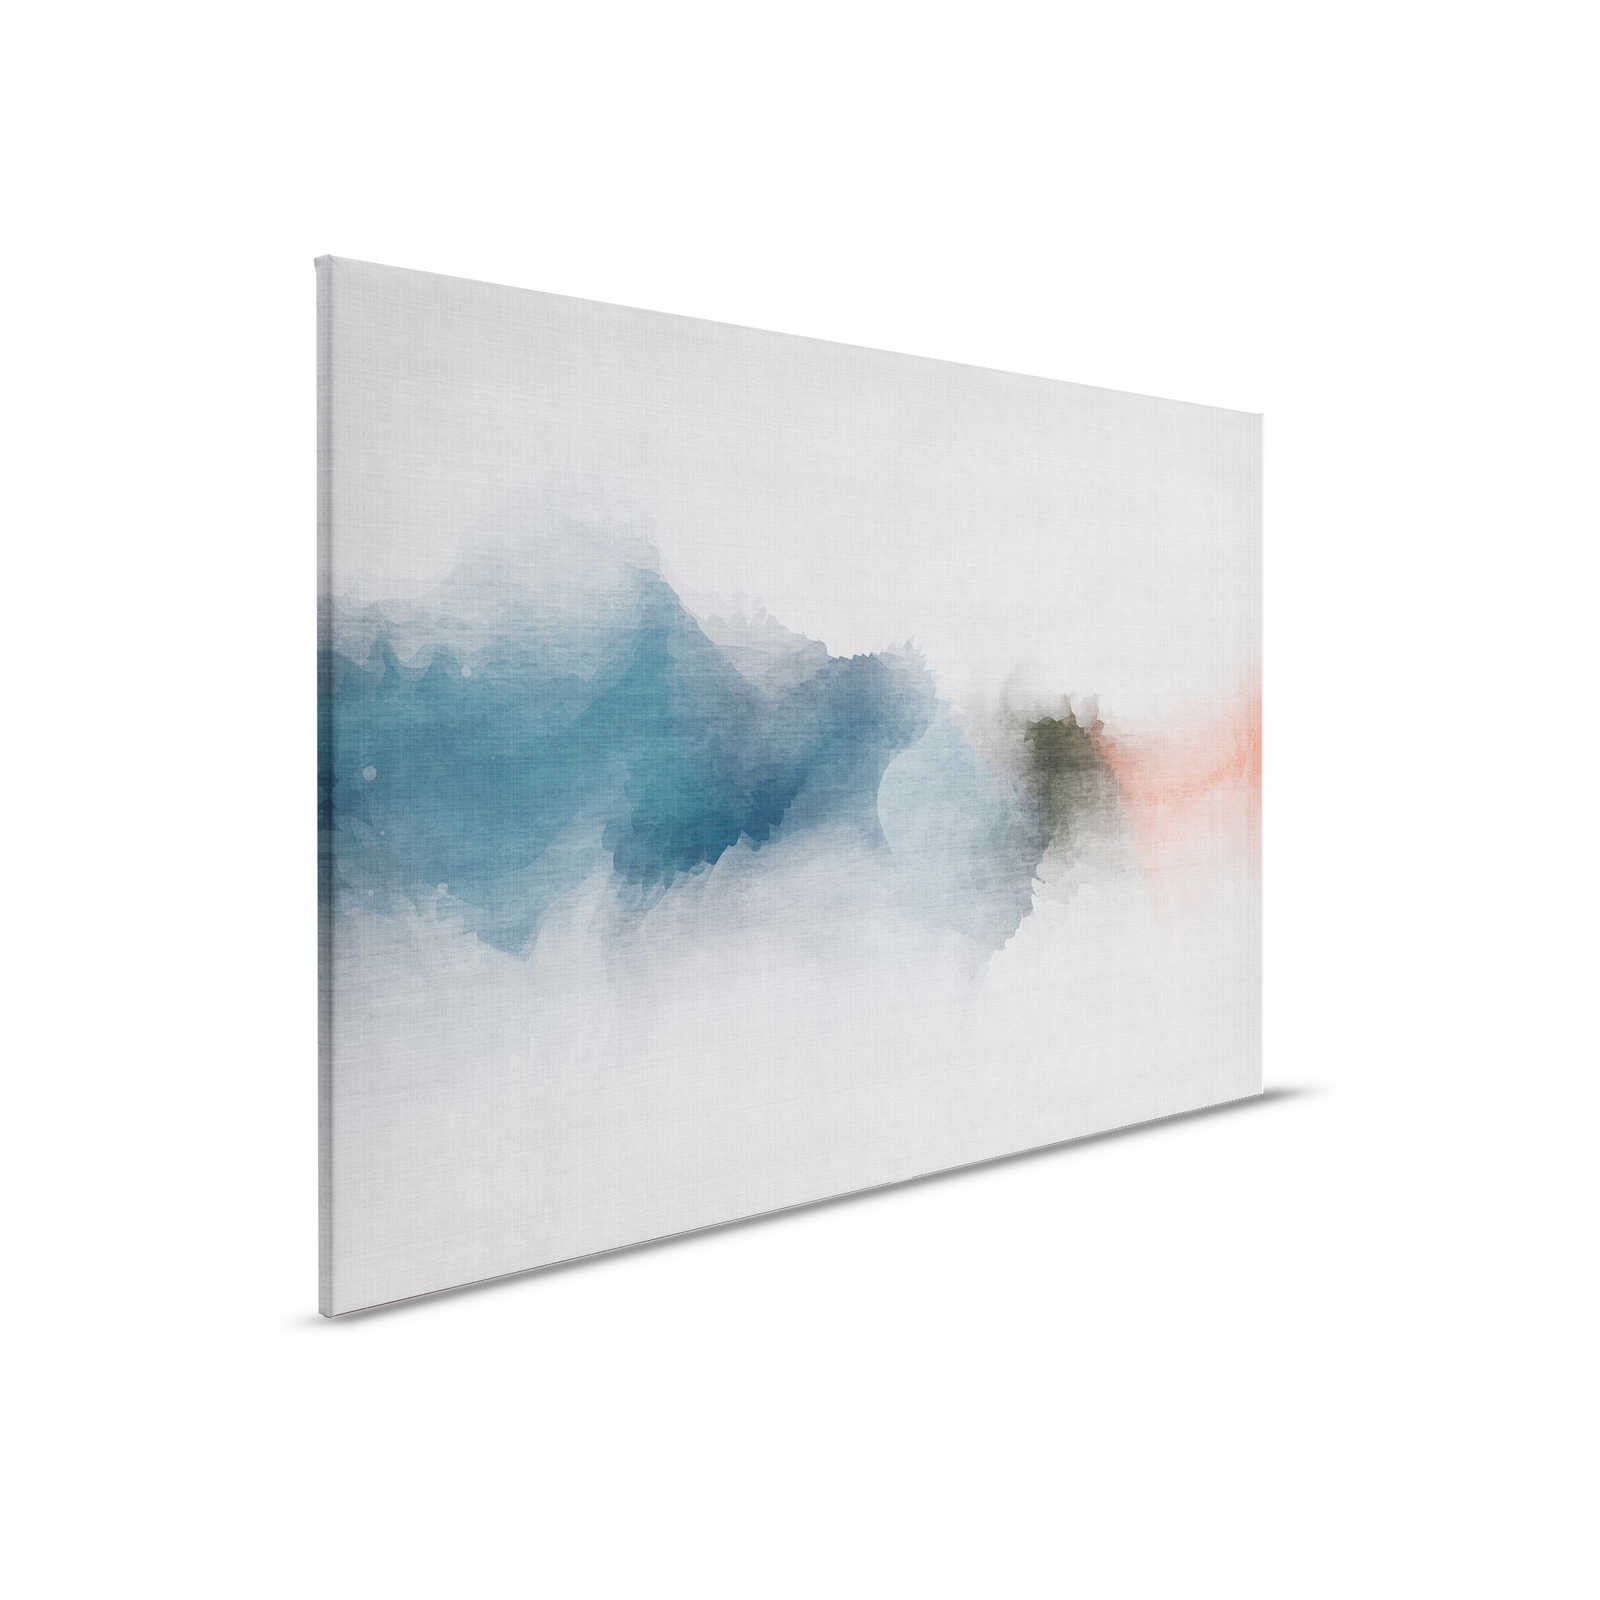 Daydream 1 - Minimalistisches Leinwandbild im Aquarell Stil- Naturleinen Struktur – 0,90 m x 0,60 m
